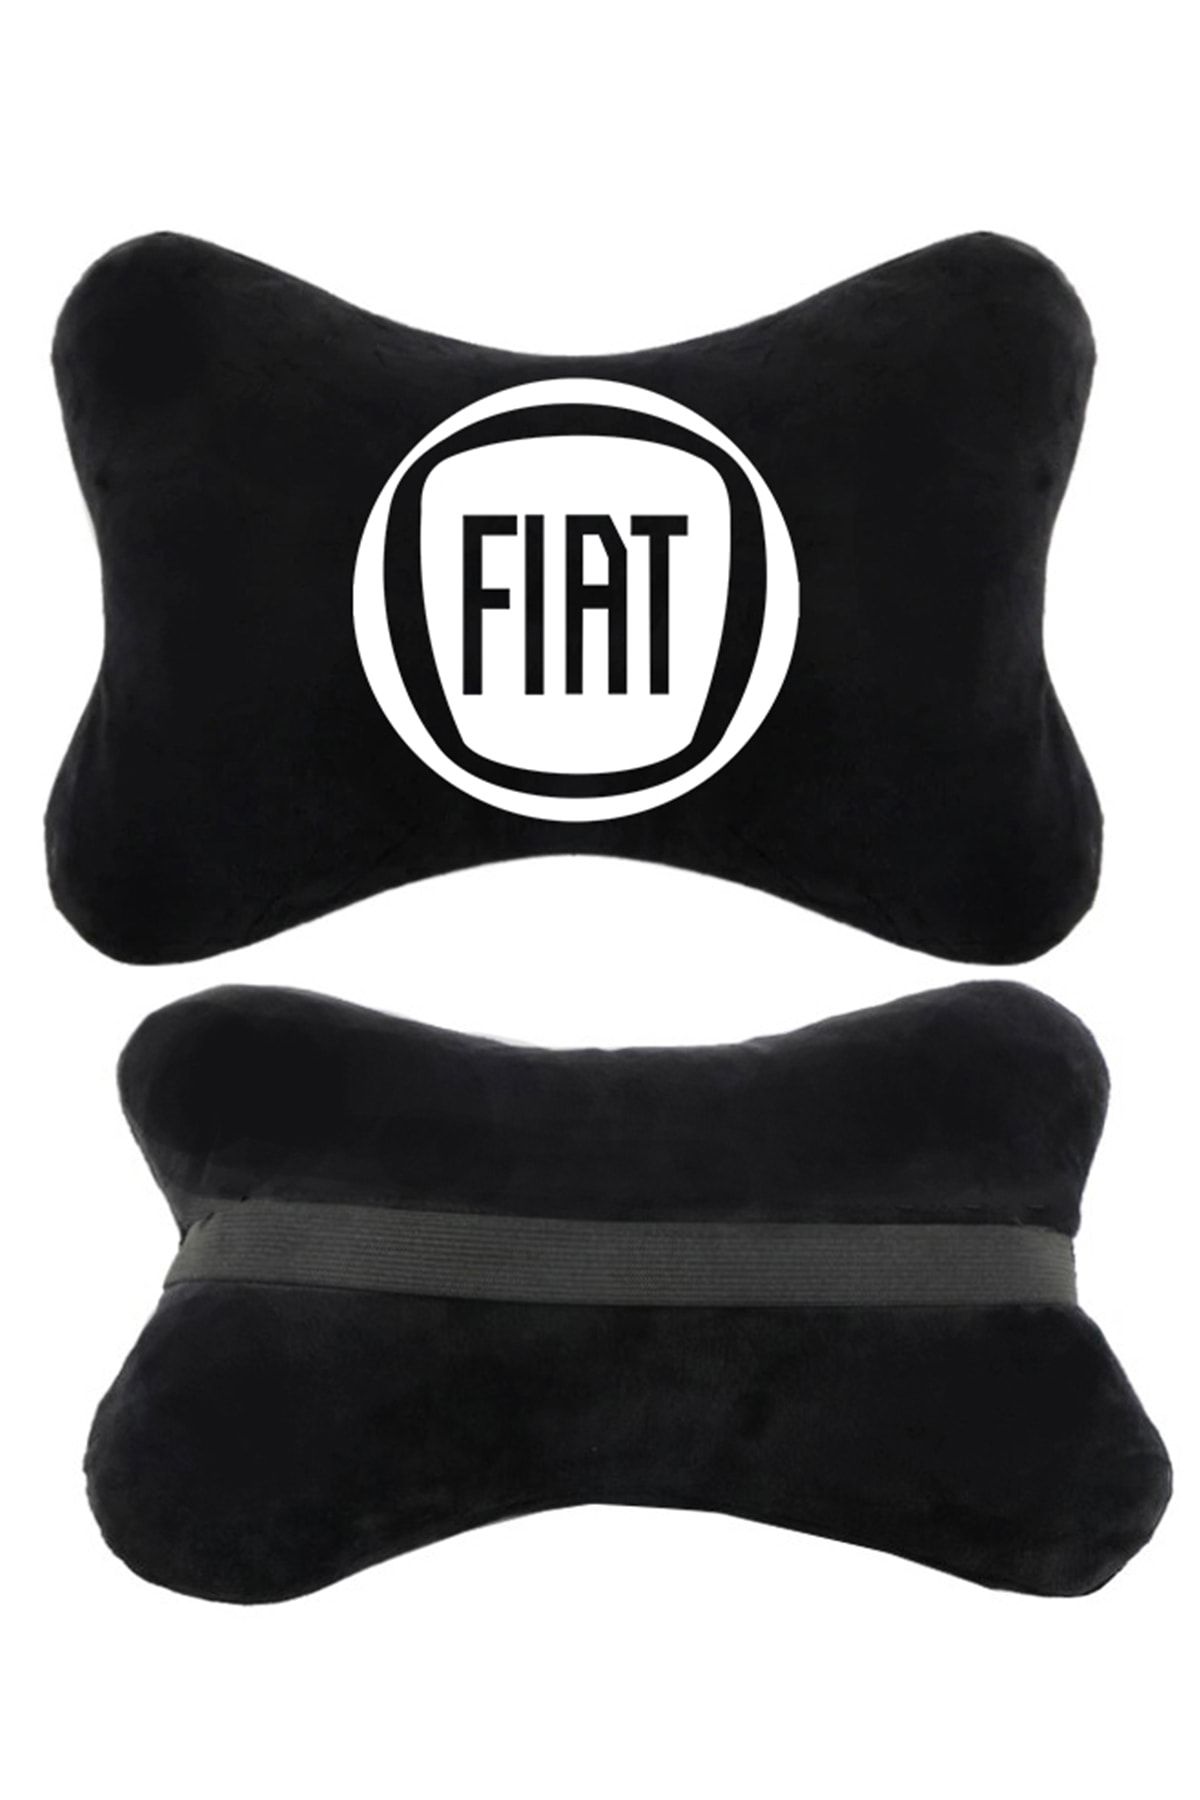 1araba1ev Fiat Logolu Siyah Ortopedik Oto Boyun Yastığı |koltuk Yastığı |boyun Yastığı|papyon Yastık |2 Adet